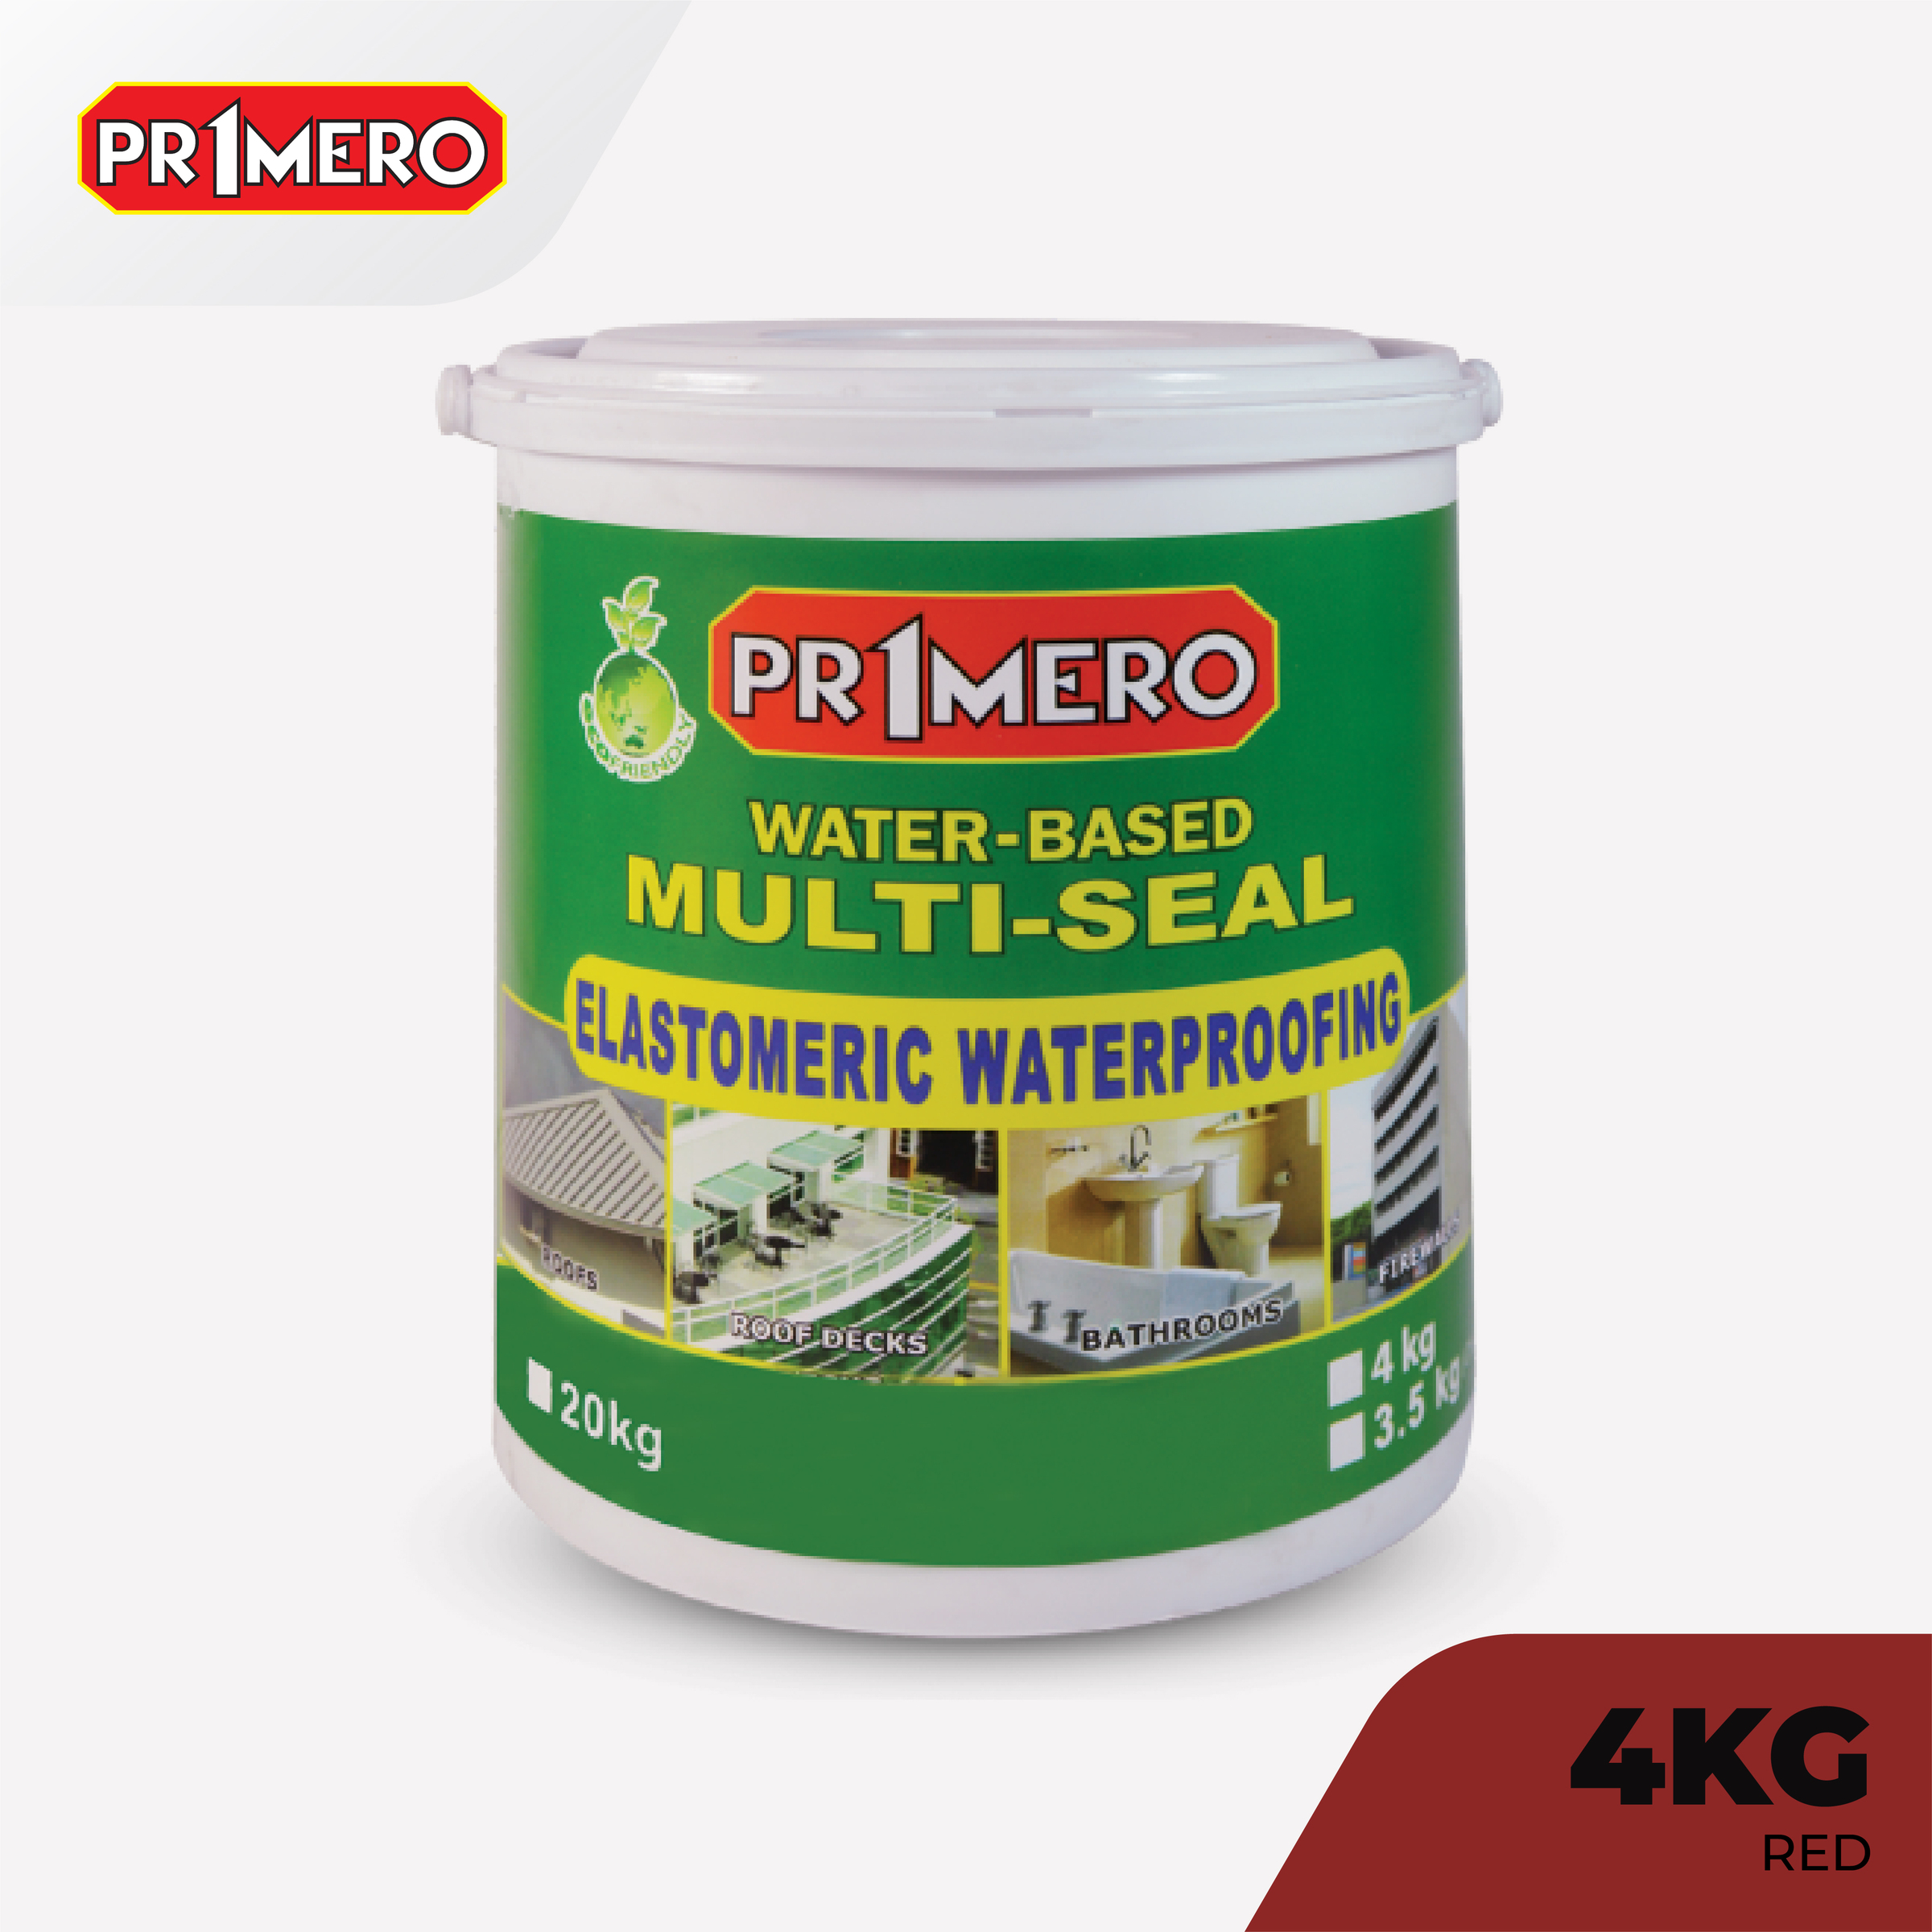 Primero Multi-Seal Elastomeric Waterproofing Sealant Red - 4Kg